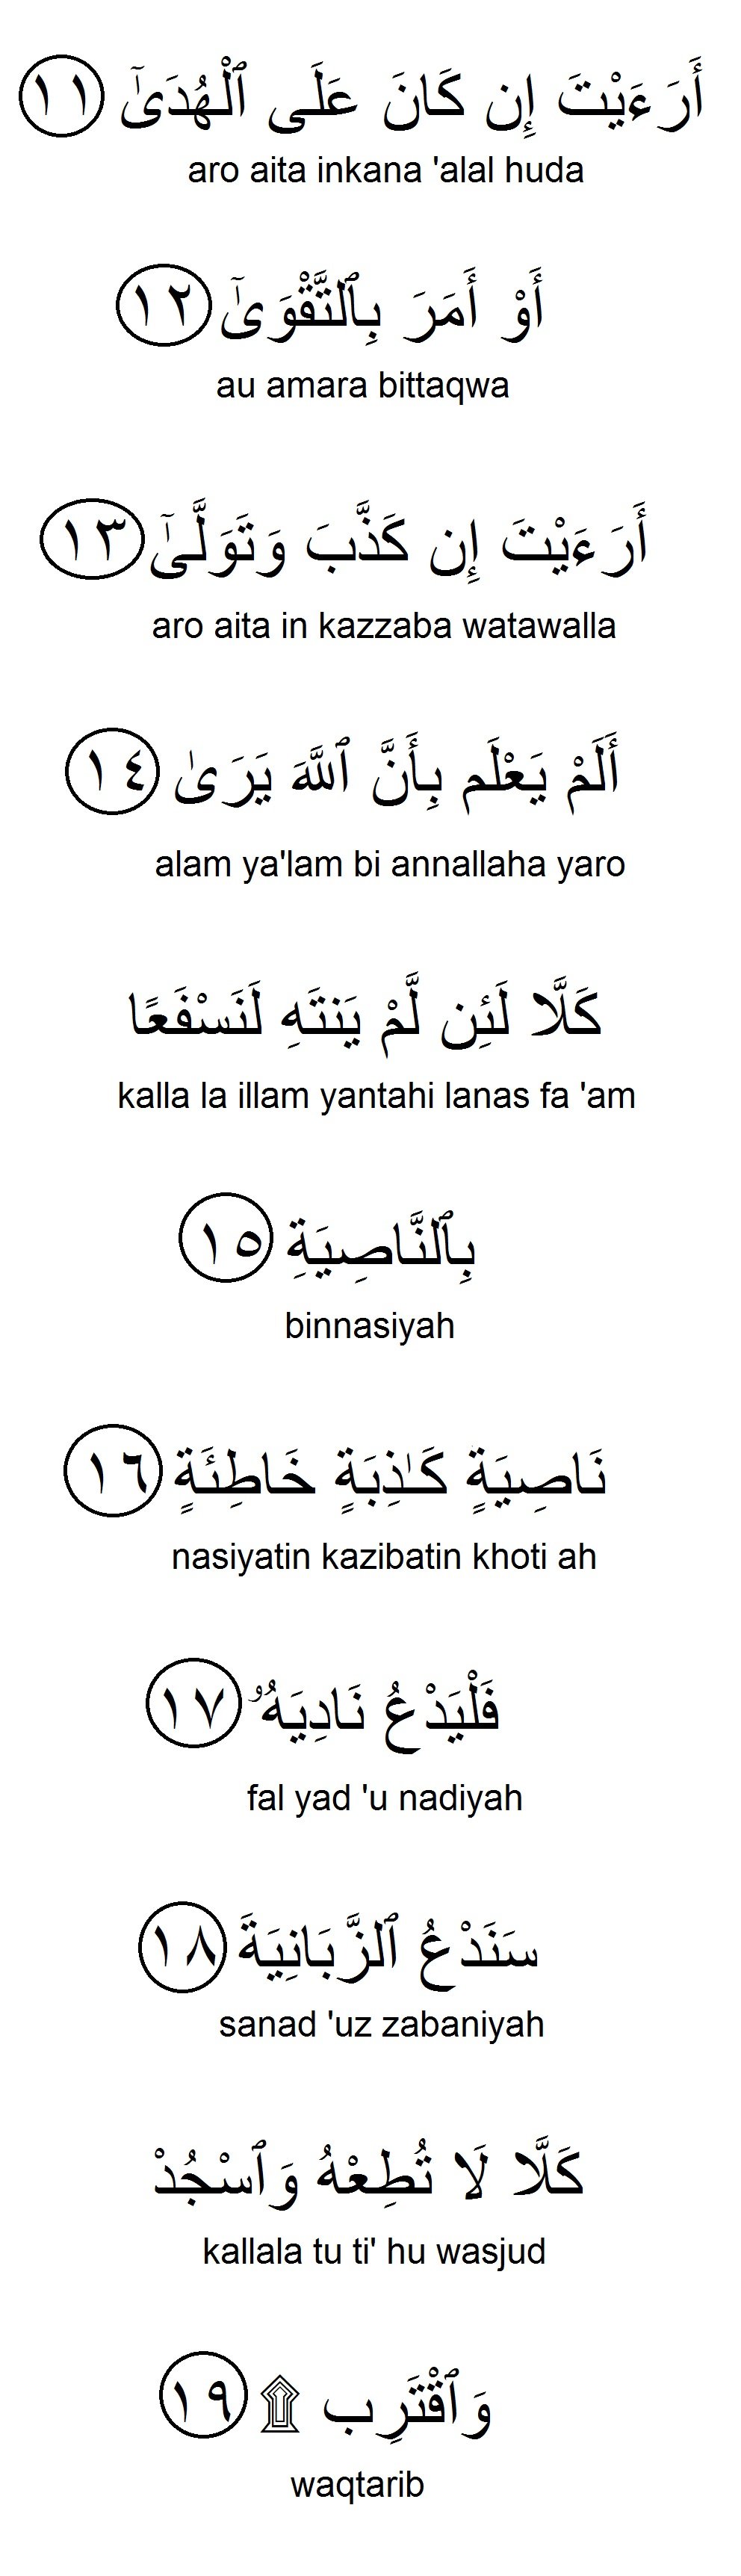 Surah Al Alaq Panduan Rumi Terjemahan Aku Muslim